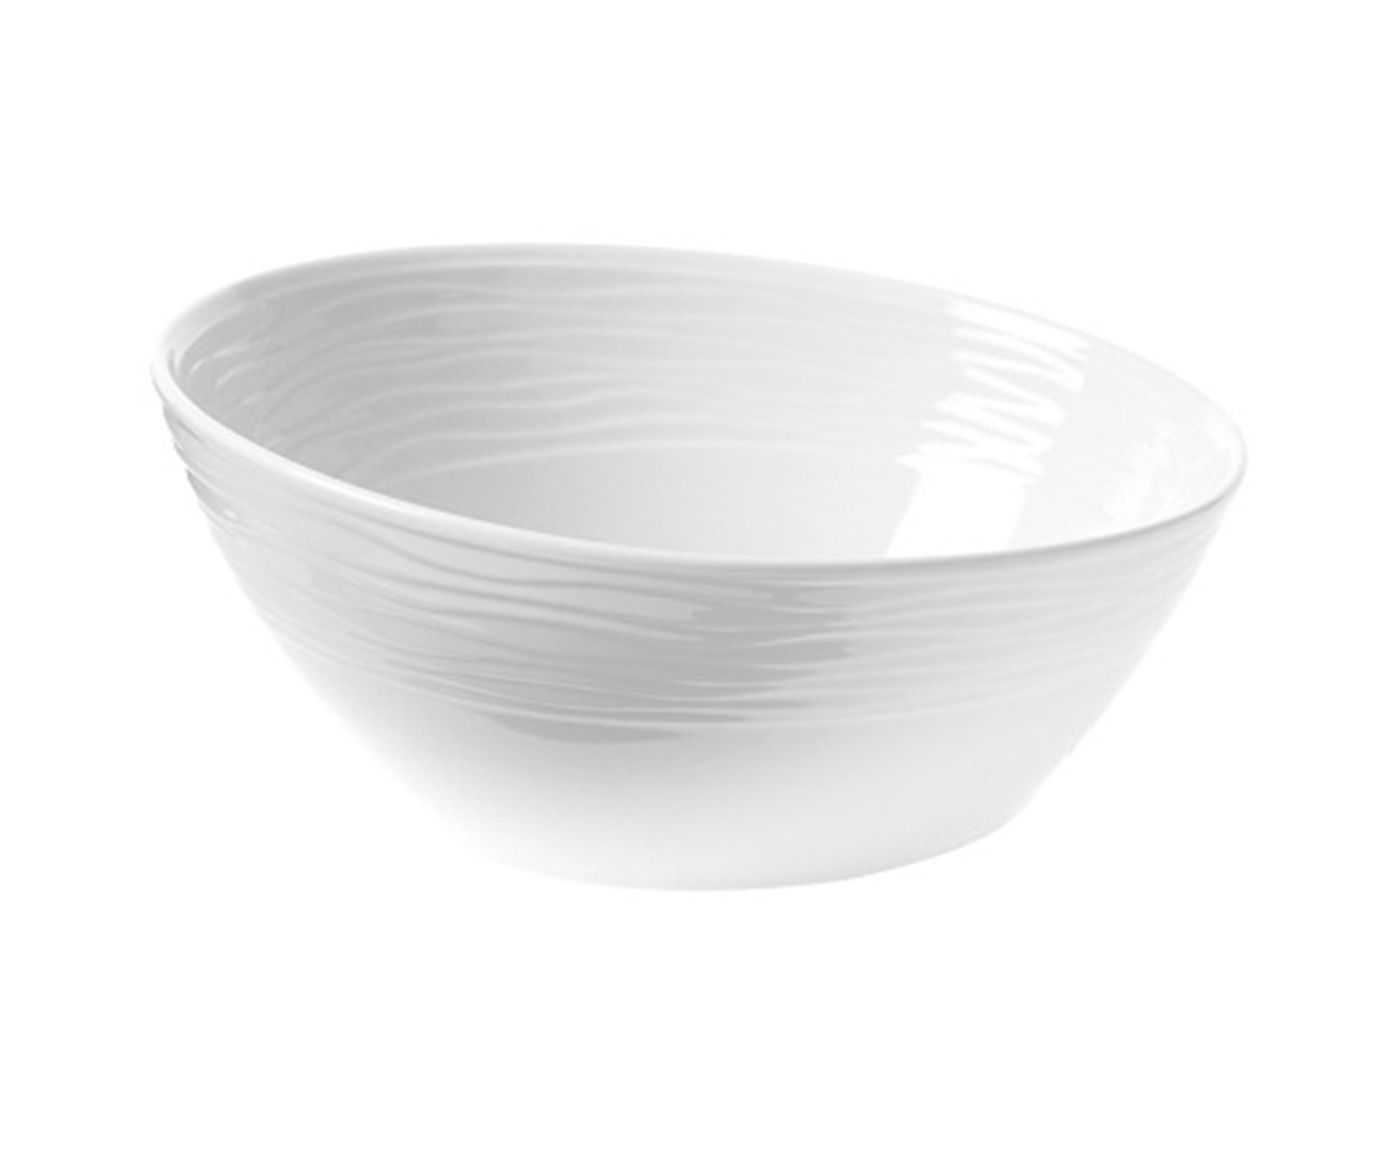 Bowl em Porcelana Waves - 27cm | Westwing.com.br